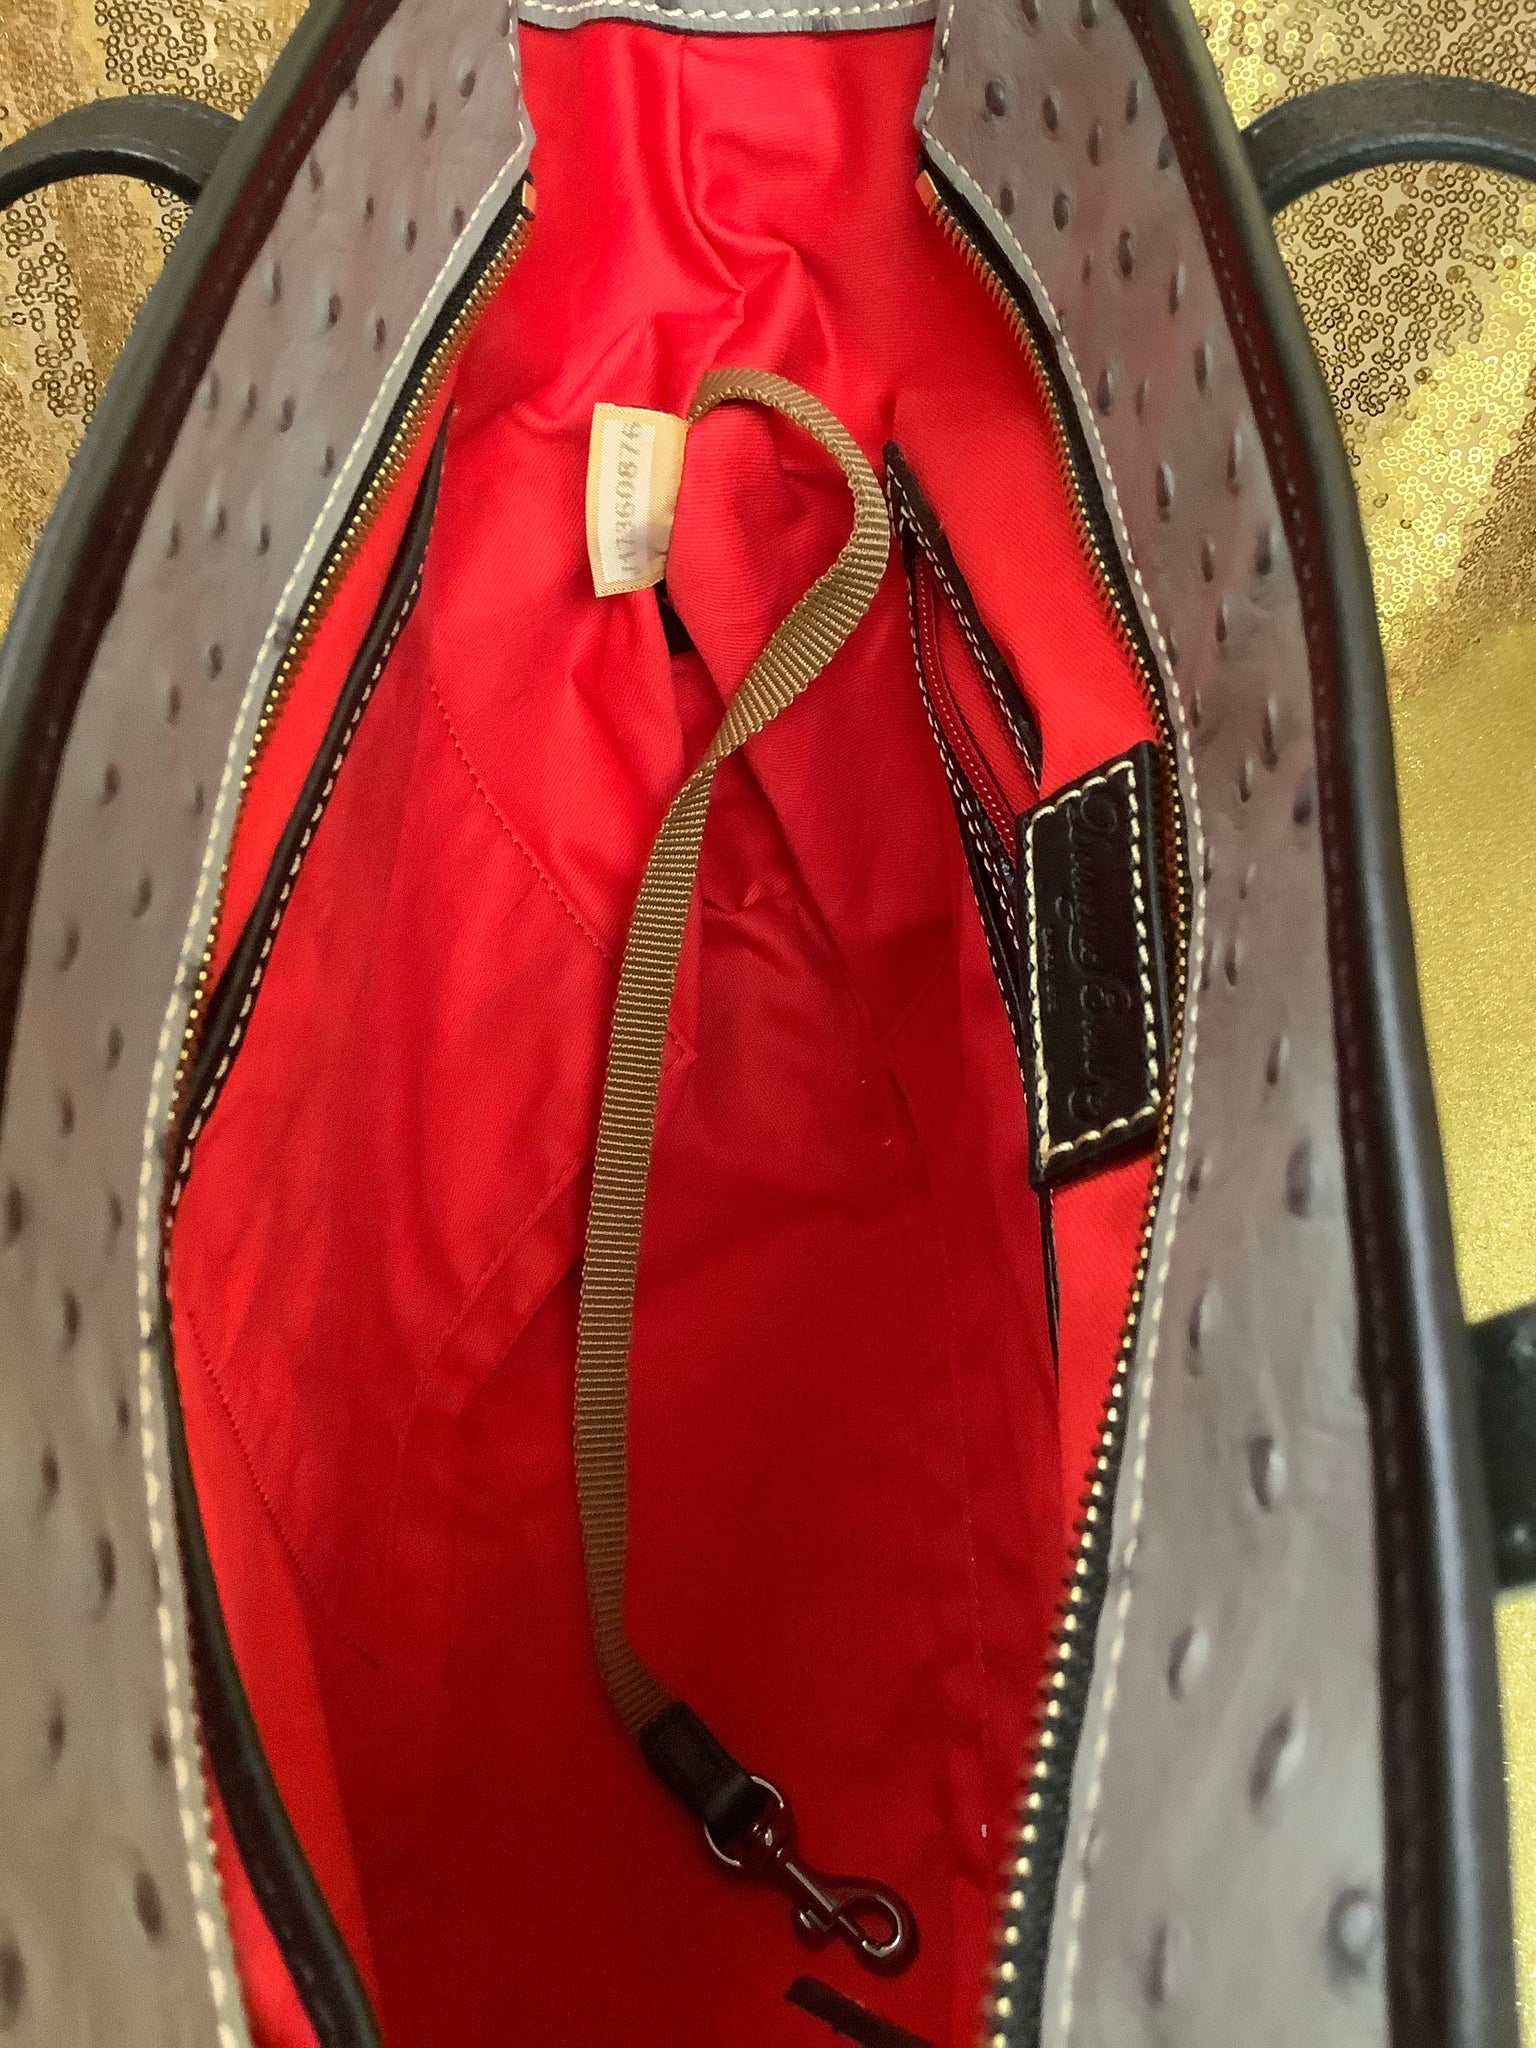 Ostrich handbag Titti Dell'Acqua Brown in Ostrich - 3831829